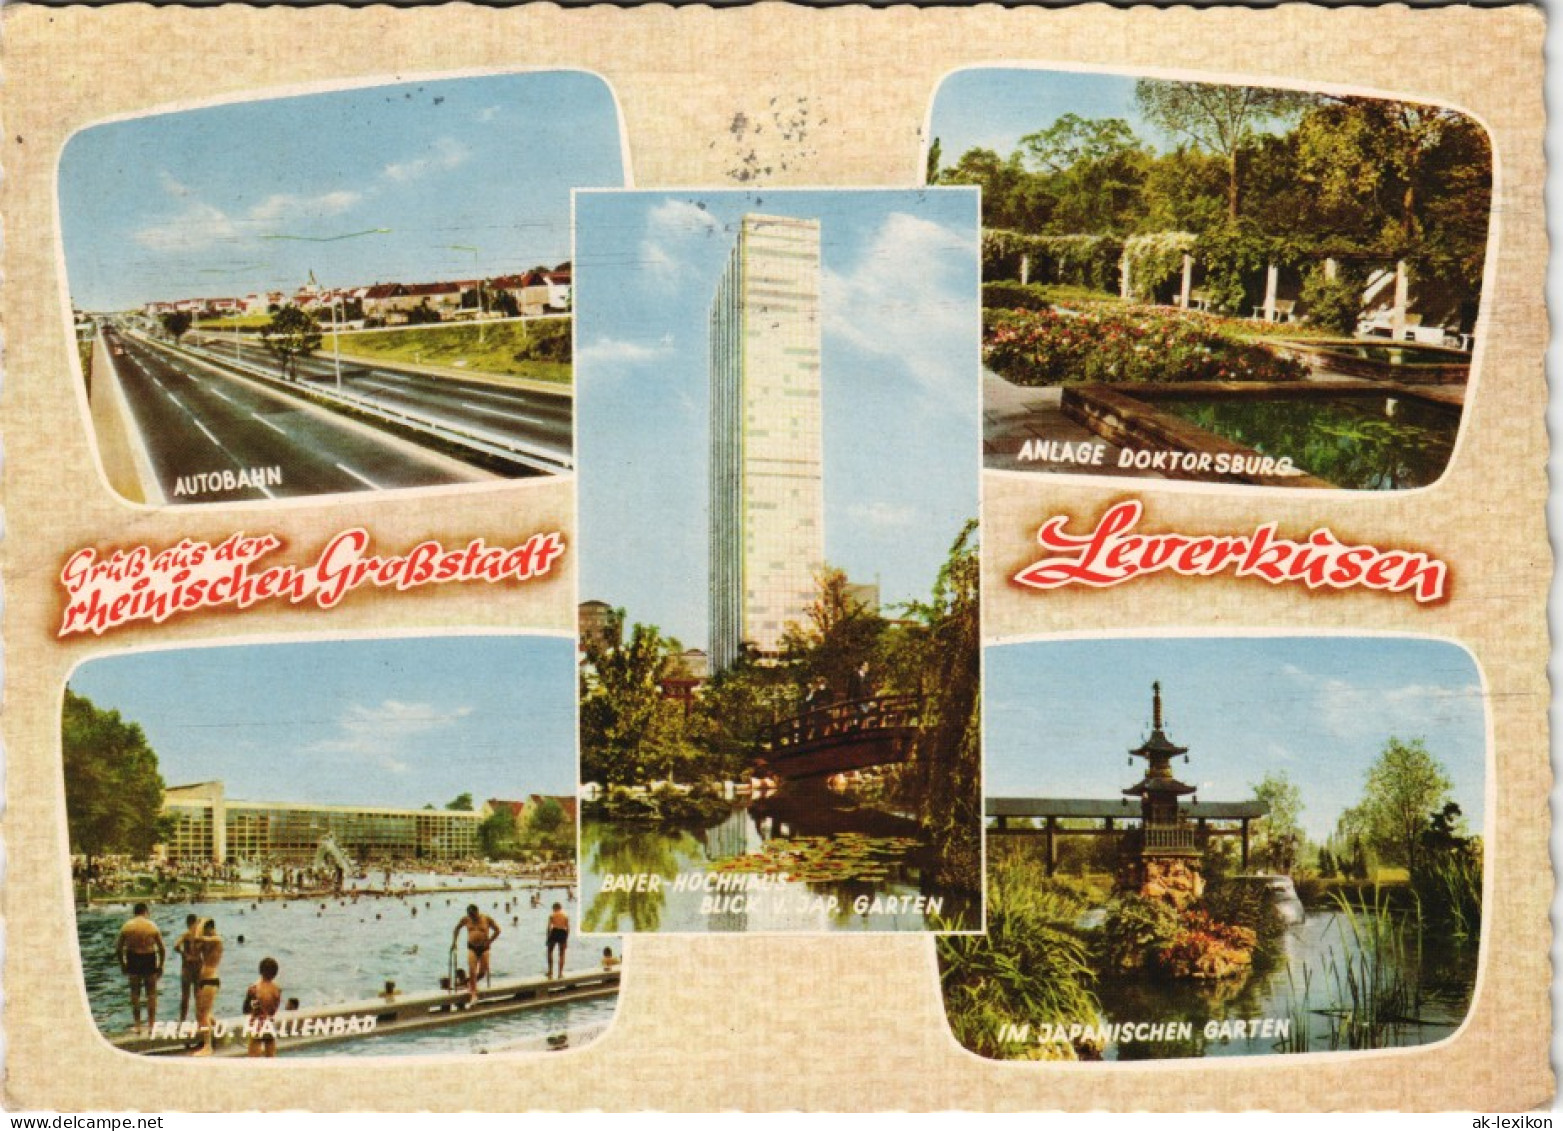 Leverkusen Mehrbild-AK Mit Autobahn, Freibad, Japanischer Garten Uvm. 1965 - Leverkusen